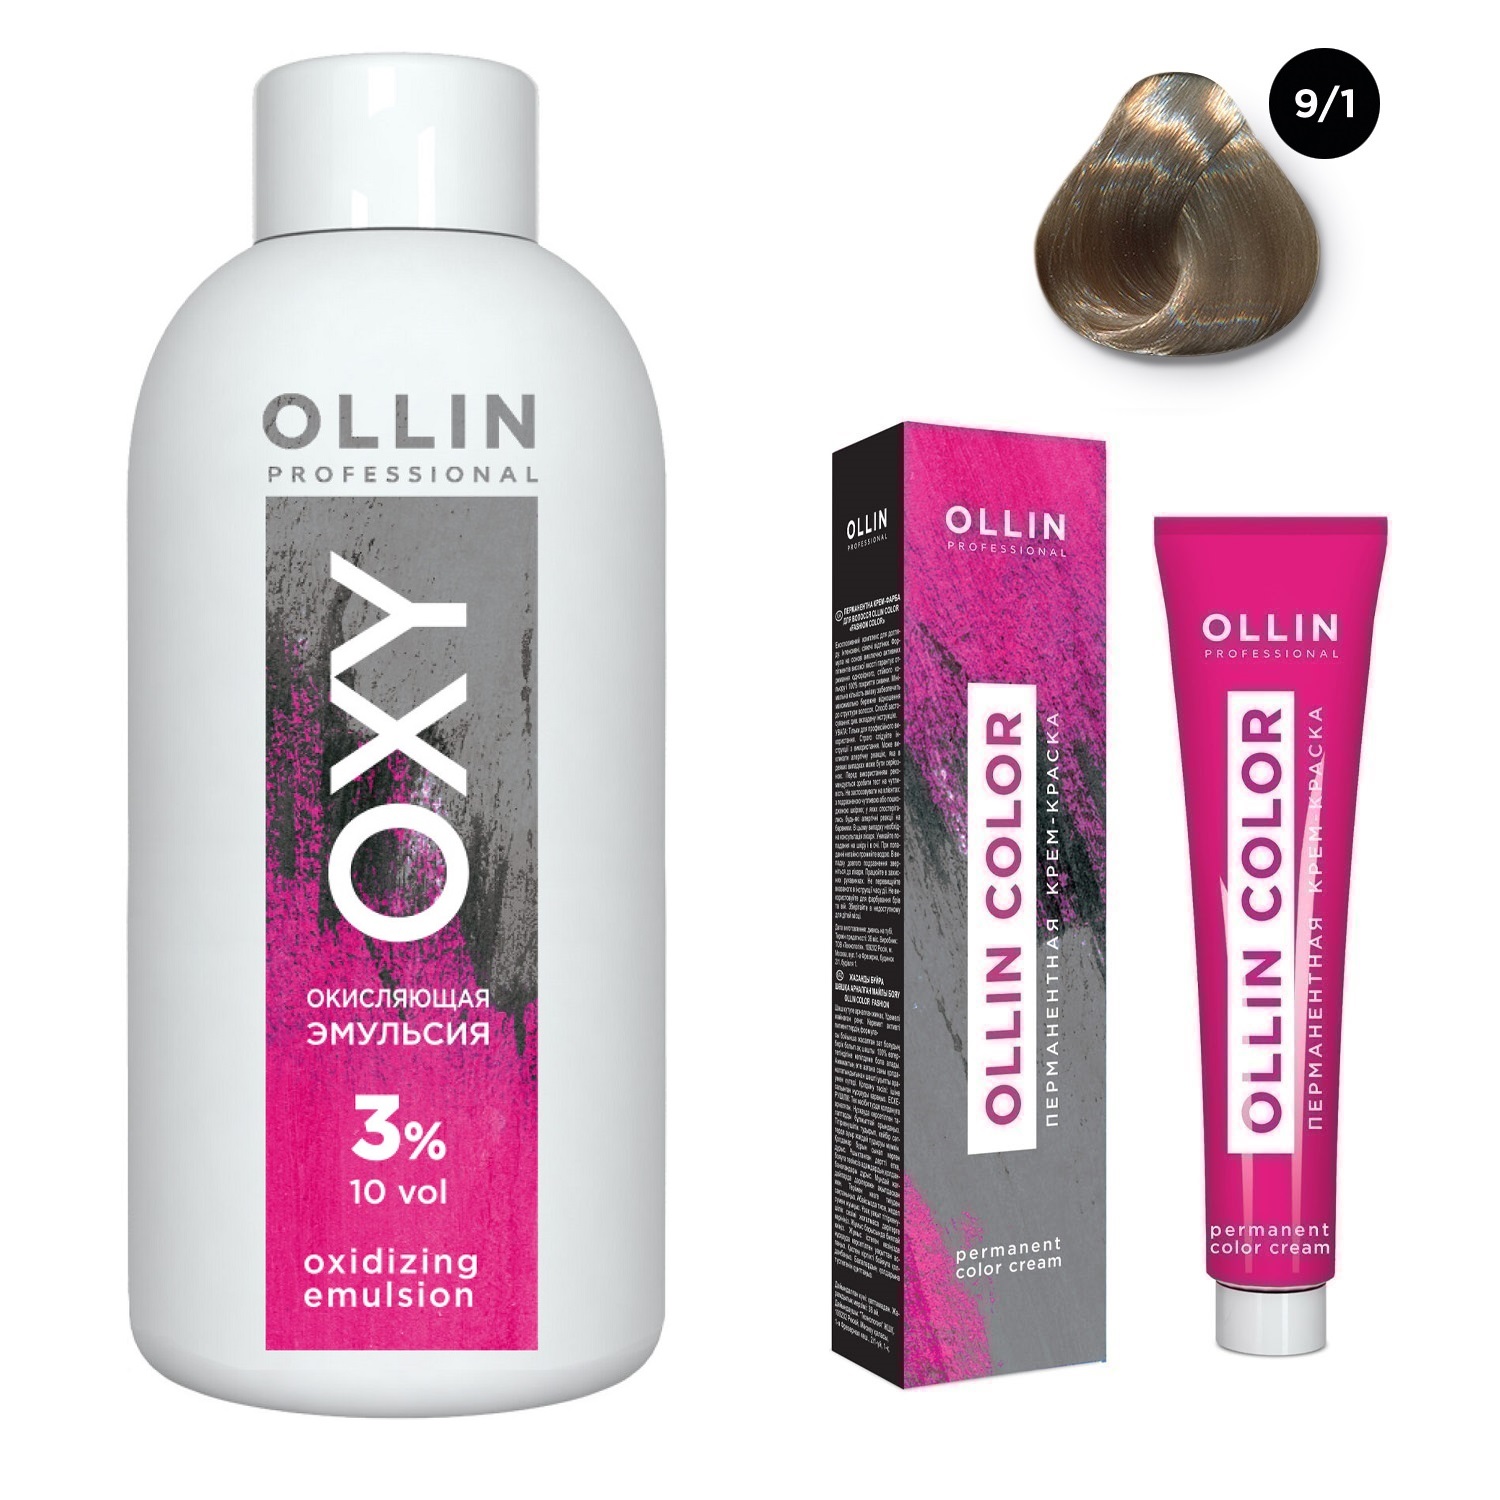 Ollin Professional Набор Перманентная крем-краска для волос Ollin Color оттенок 9/1 блондин пепельный 100 мл + Окисляющая эмульсия Oxy 3% 150 мл (Ollin Professional, Ollin Color) цена и фото